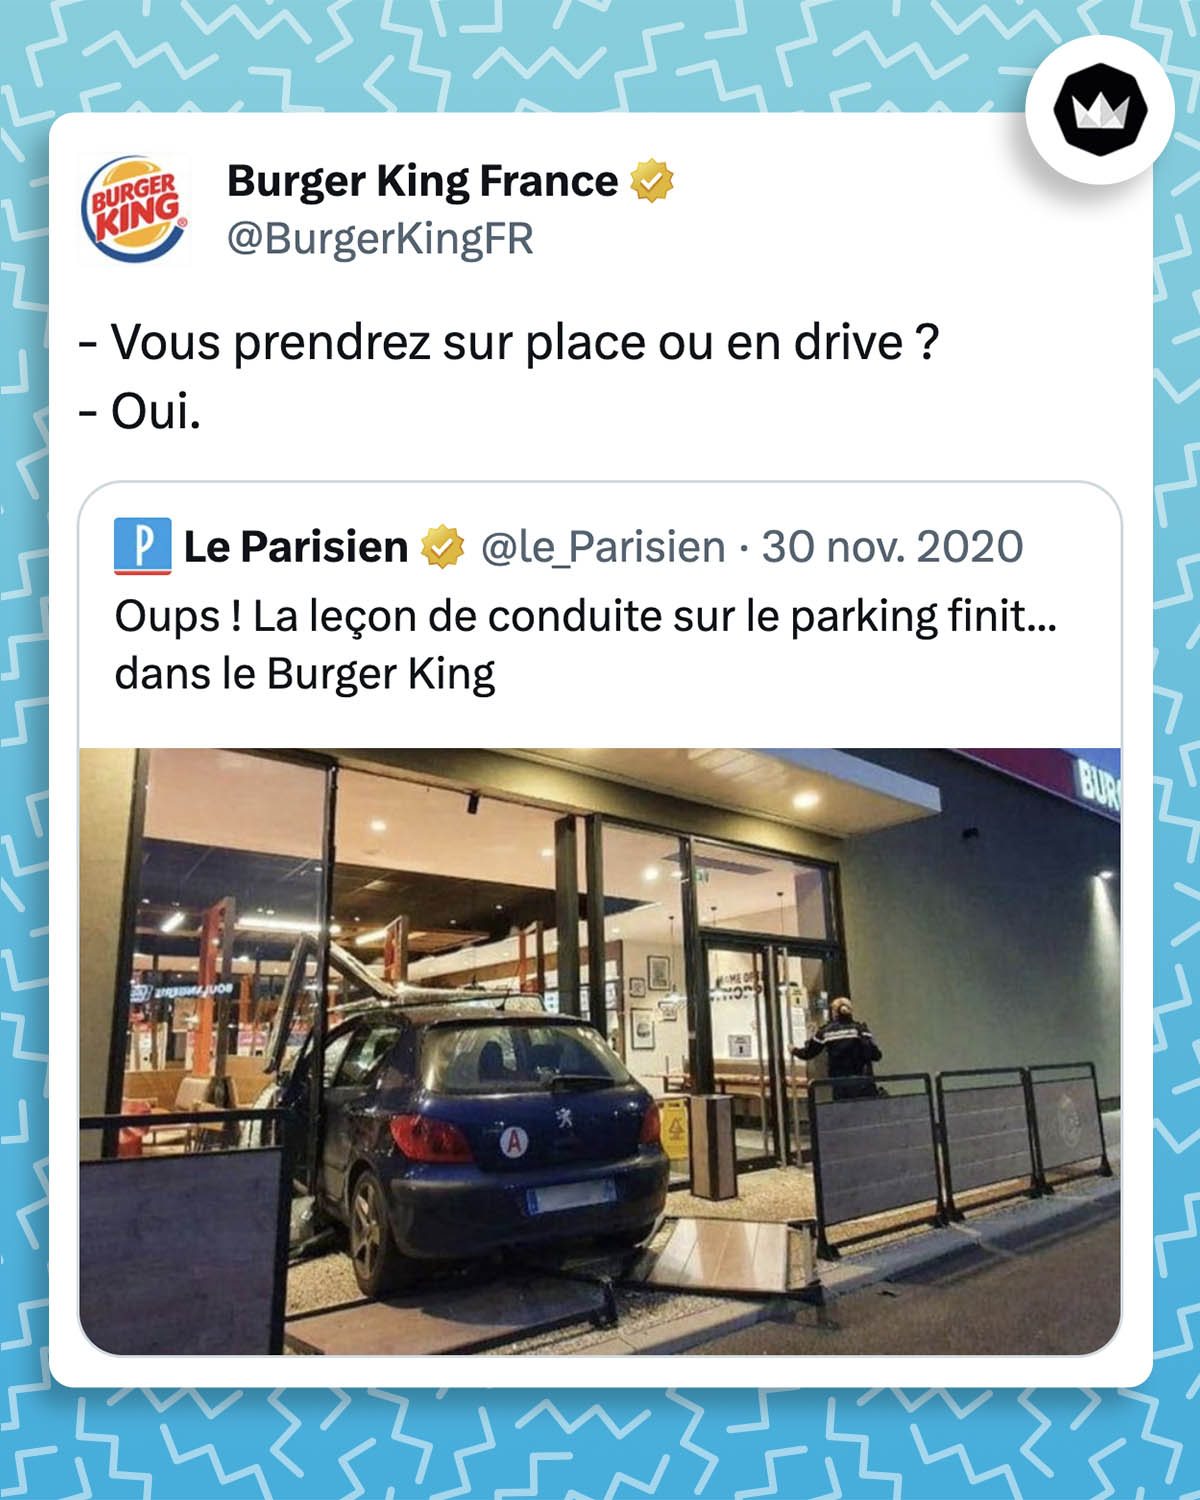 tweet de Burger King France : 
- Vous prendrez sur place ou en drive ? 
- Oui.

La marque répond à une actualité du Parisien : 
Oups ! La leçon de conduite sur le parking finit... dans le Burger King

